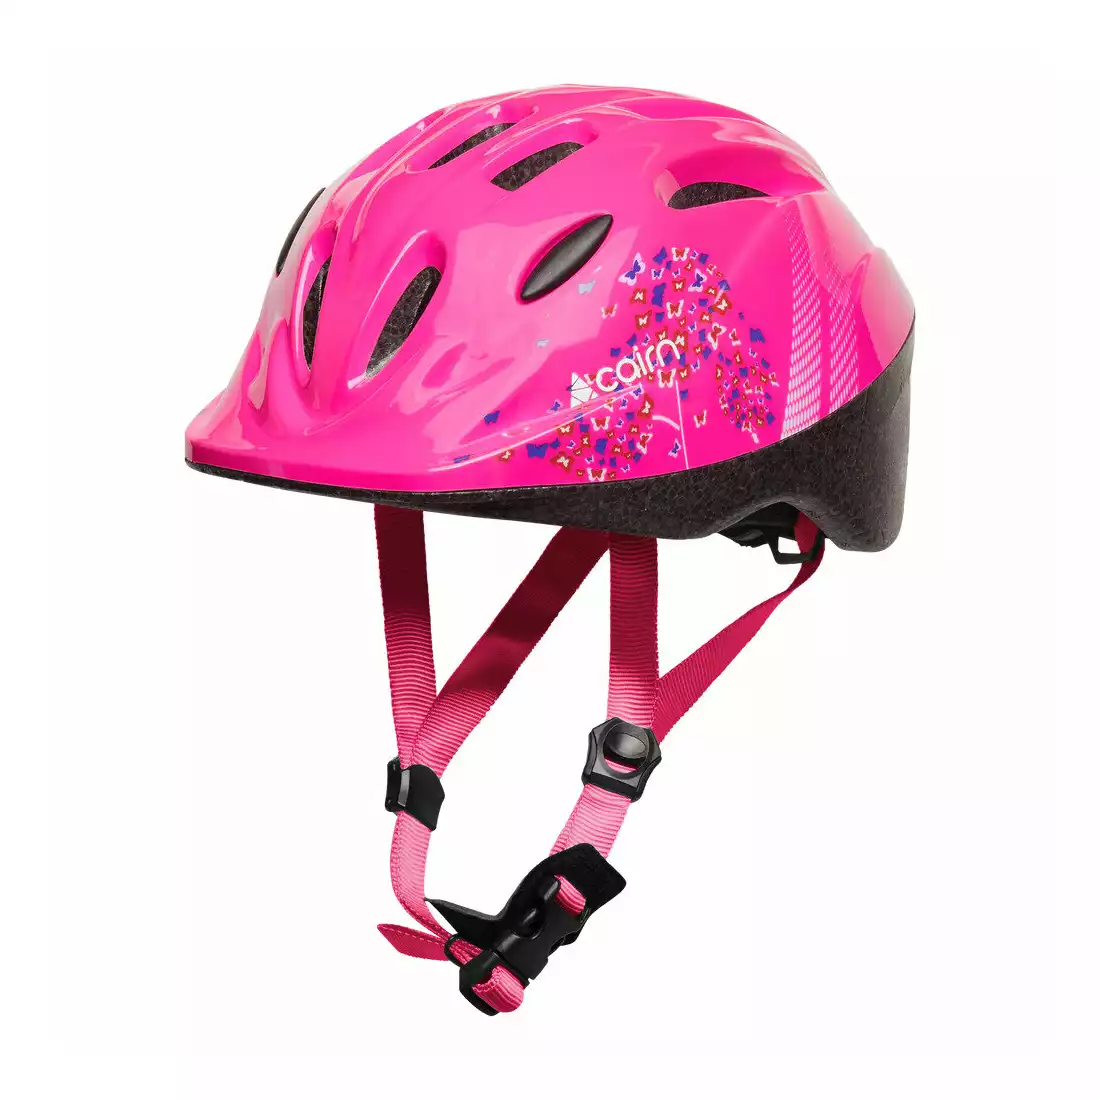 CAIRN SUNNY dětská helma na kolo, růžový